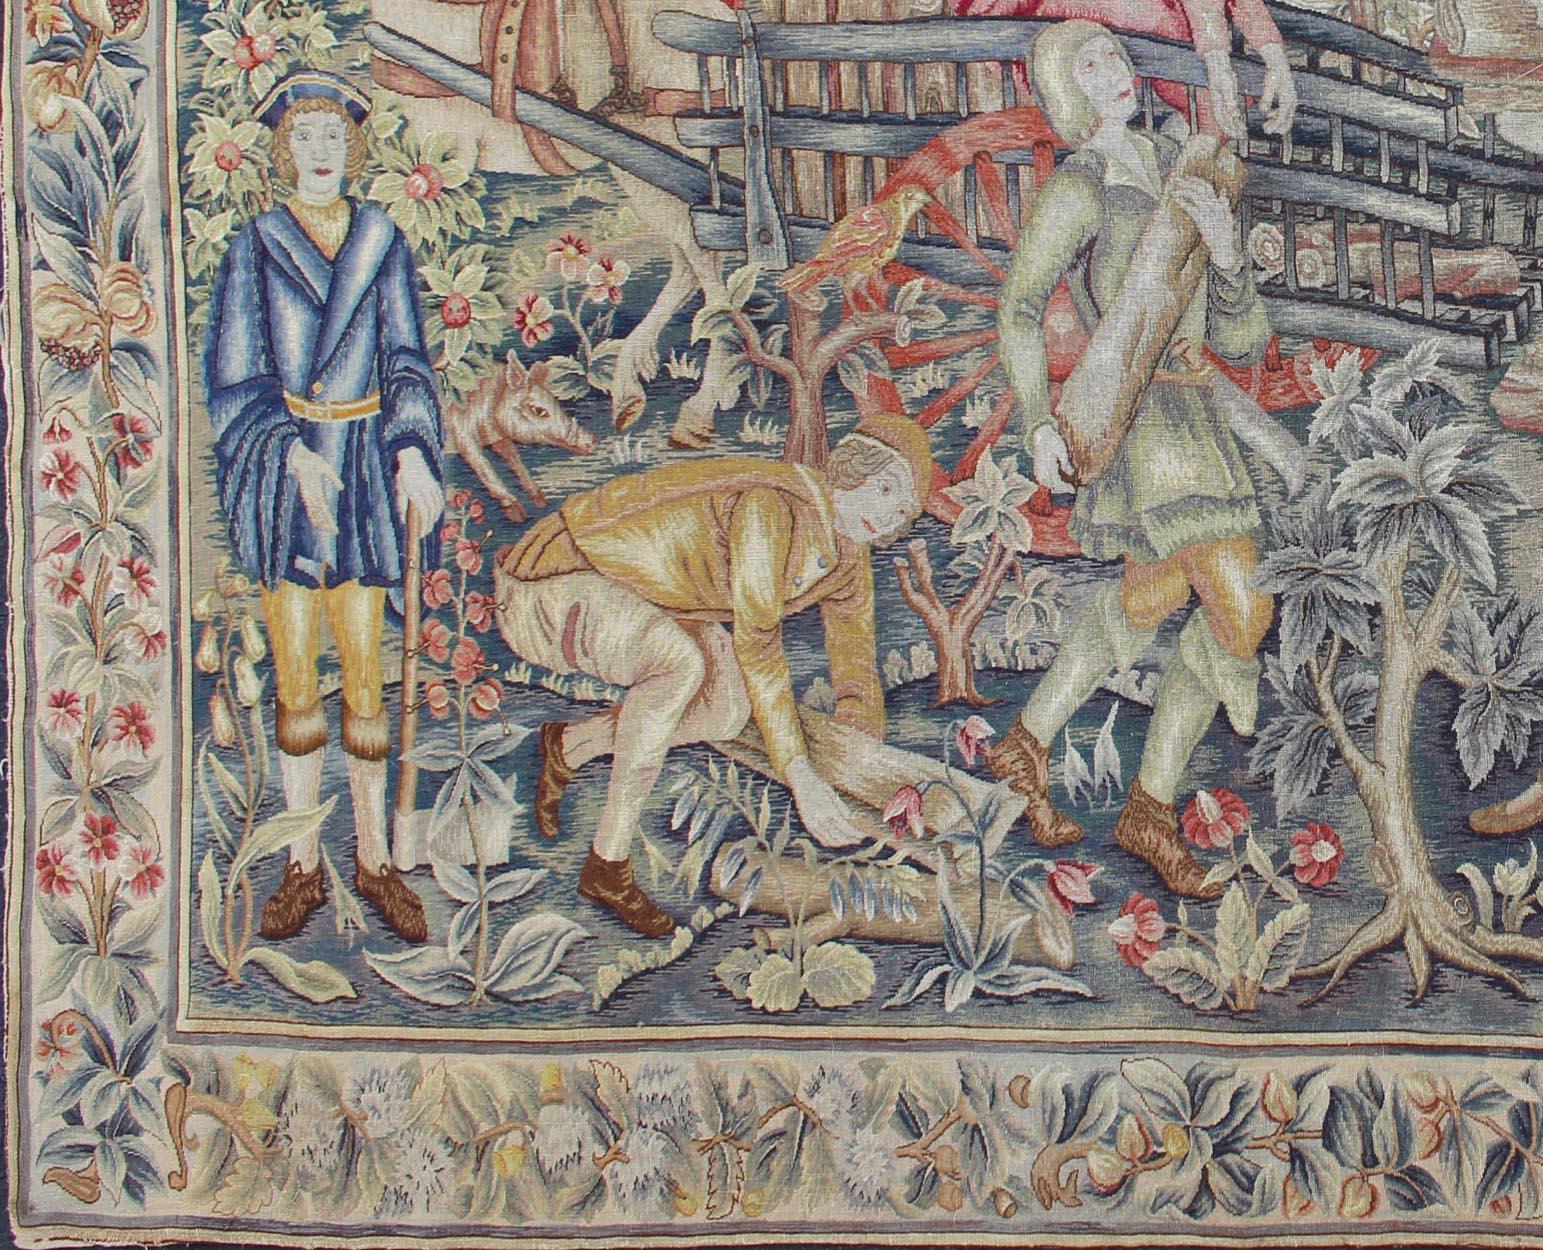 Französischer antiker Wandteppich mit Menschen, Tieren, Grünzeug und Schloss, Teppich 19-0509, Herkunftsland / Art: Frankreich / Wandteppich, um 1860

Dieser Wandteppich ist ein einzigartiges und seltenes Stück Geschichte. Es stammt aus dem